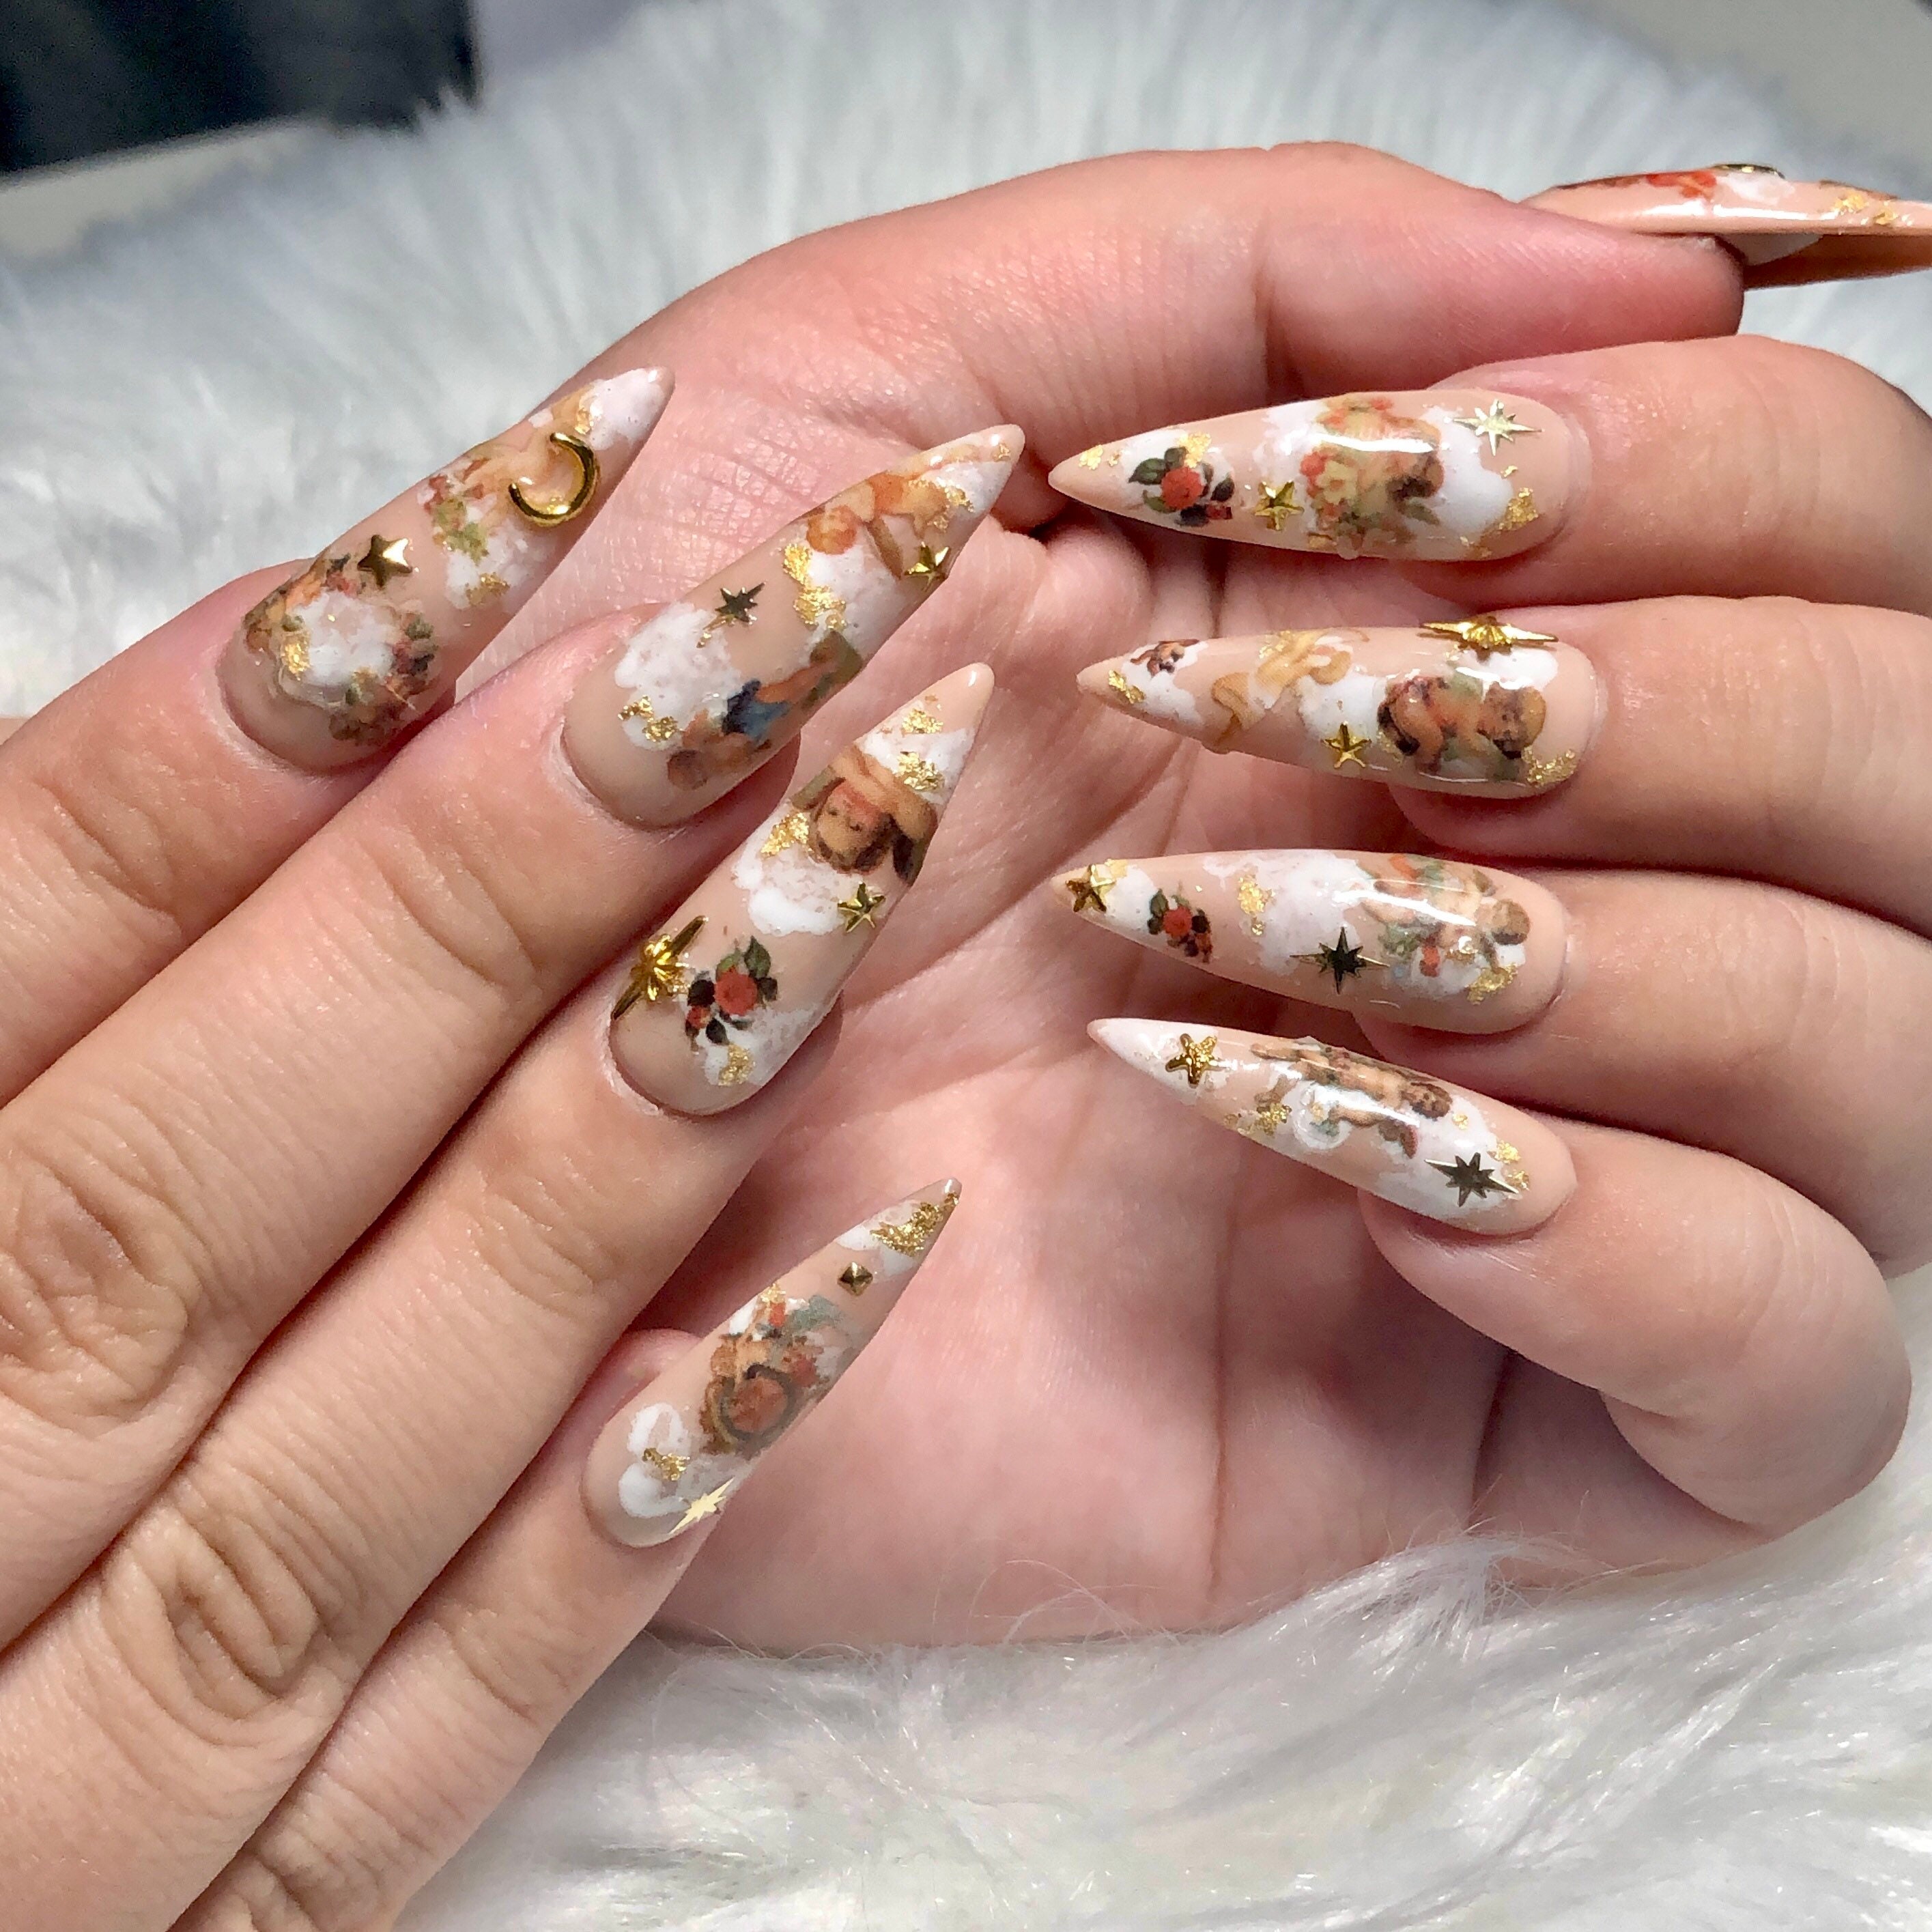 New nail color. White. Actually para lang syang liquid pap… | Flickr